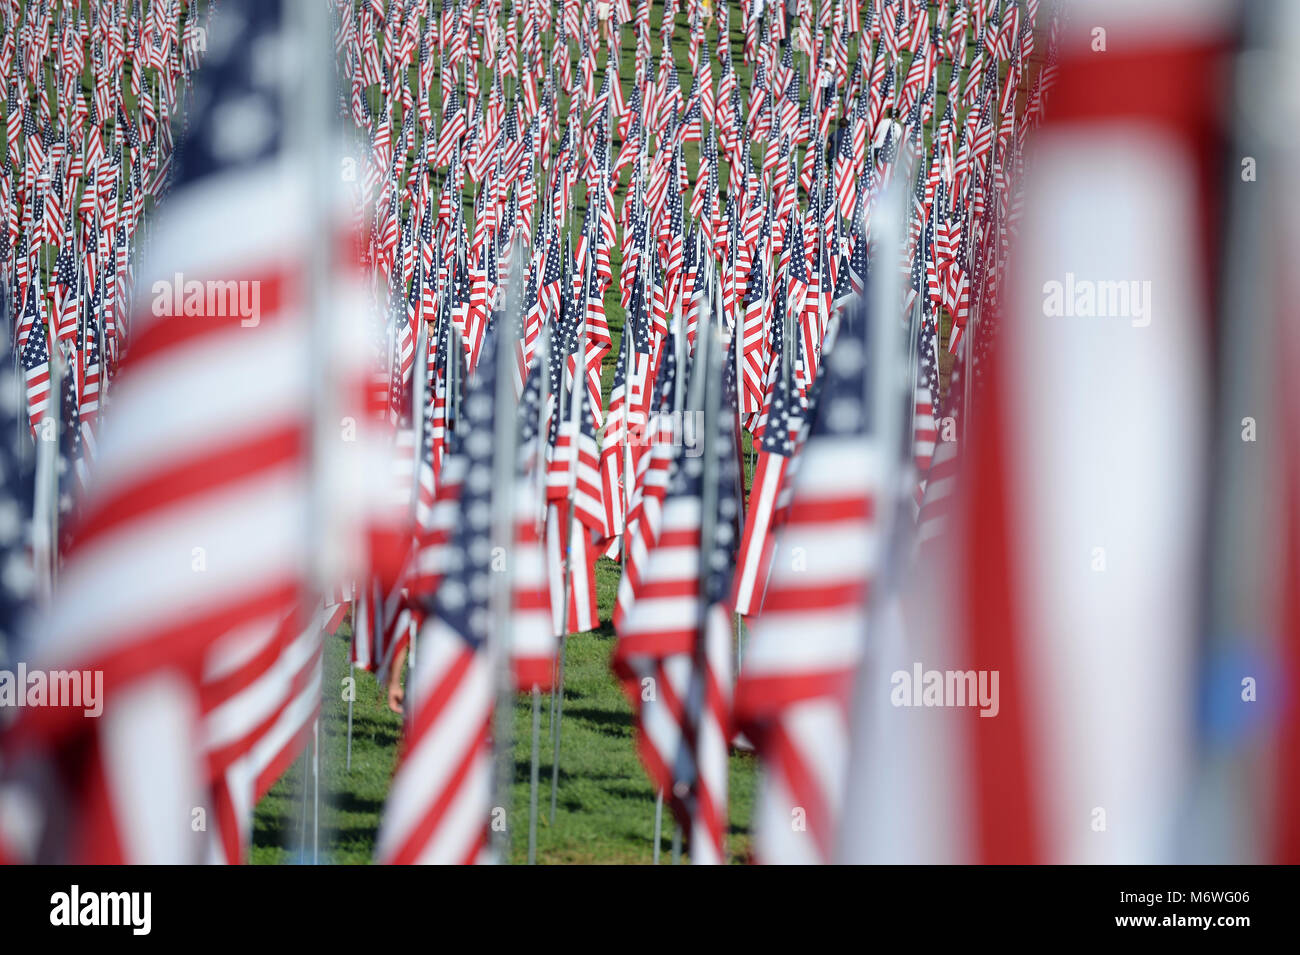 Saint Louis, MO - 11 septembre 2016 : plus de 7 000 drapeaux avec nom, photo et dog tag mort d'un militaire de la défense des États-Unis en dehors de l'onde e Banque D'Images